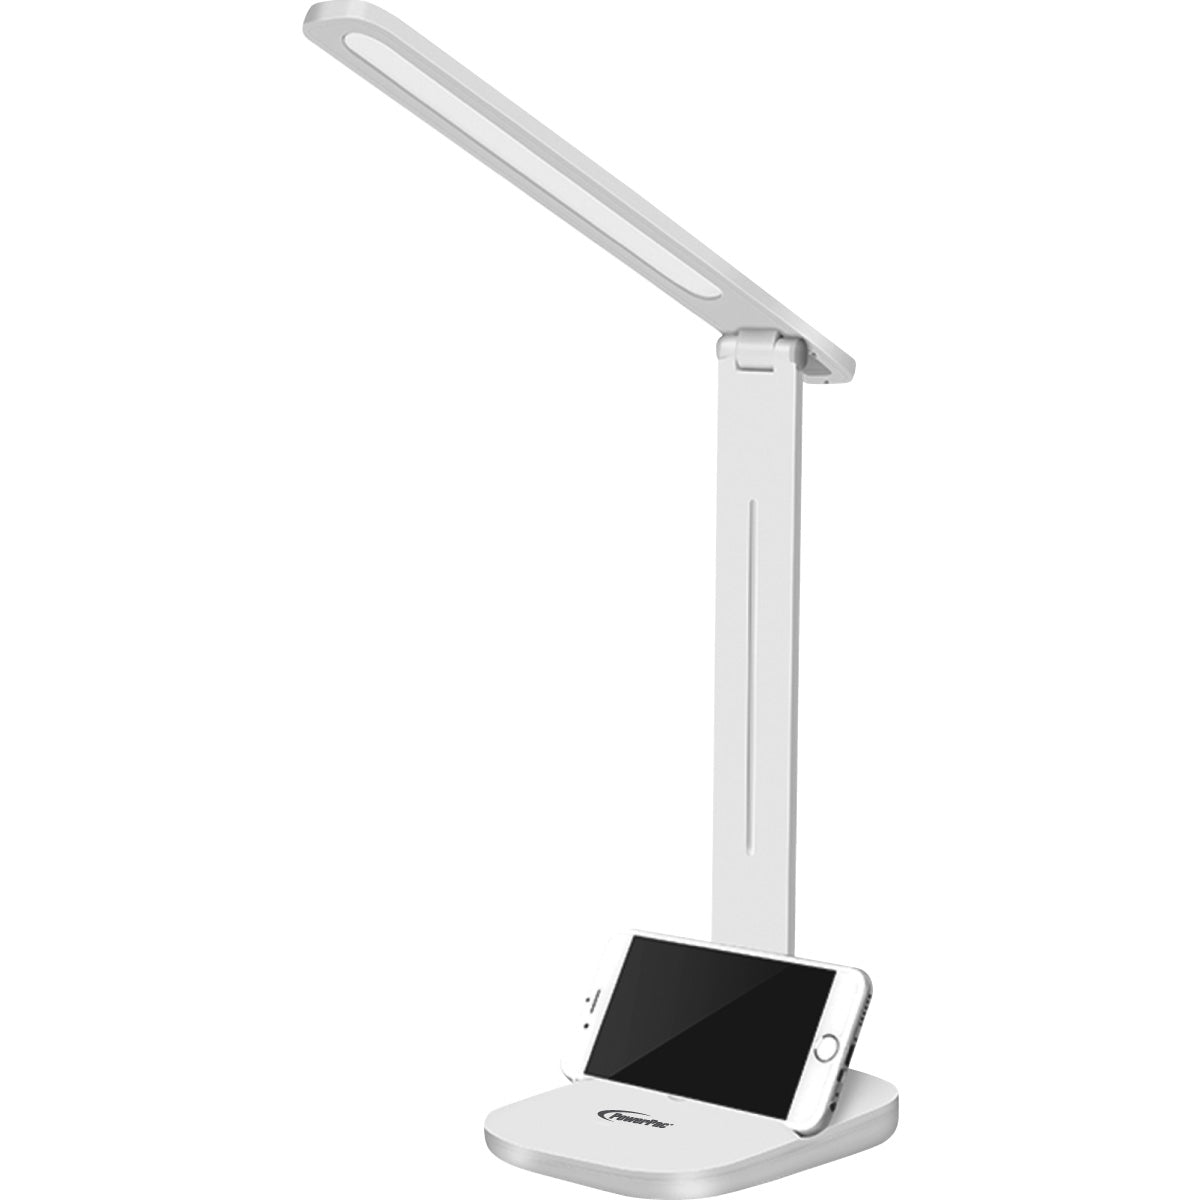 USB LED Desk Lamp, children learning Table Lamp (PP1302)